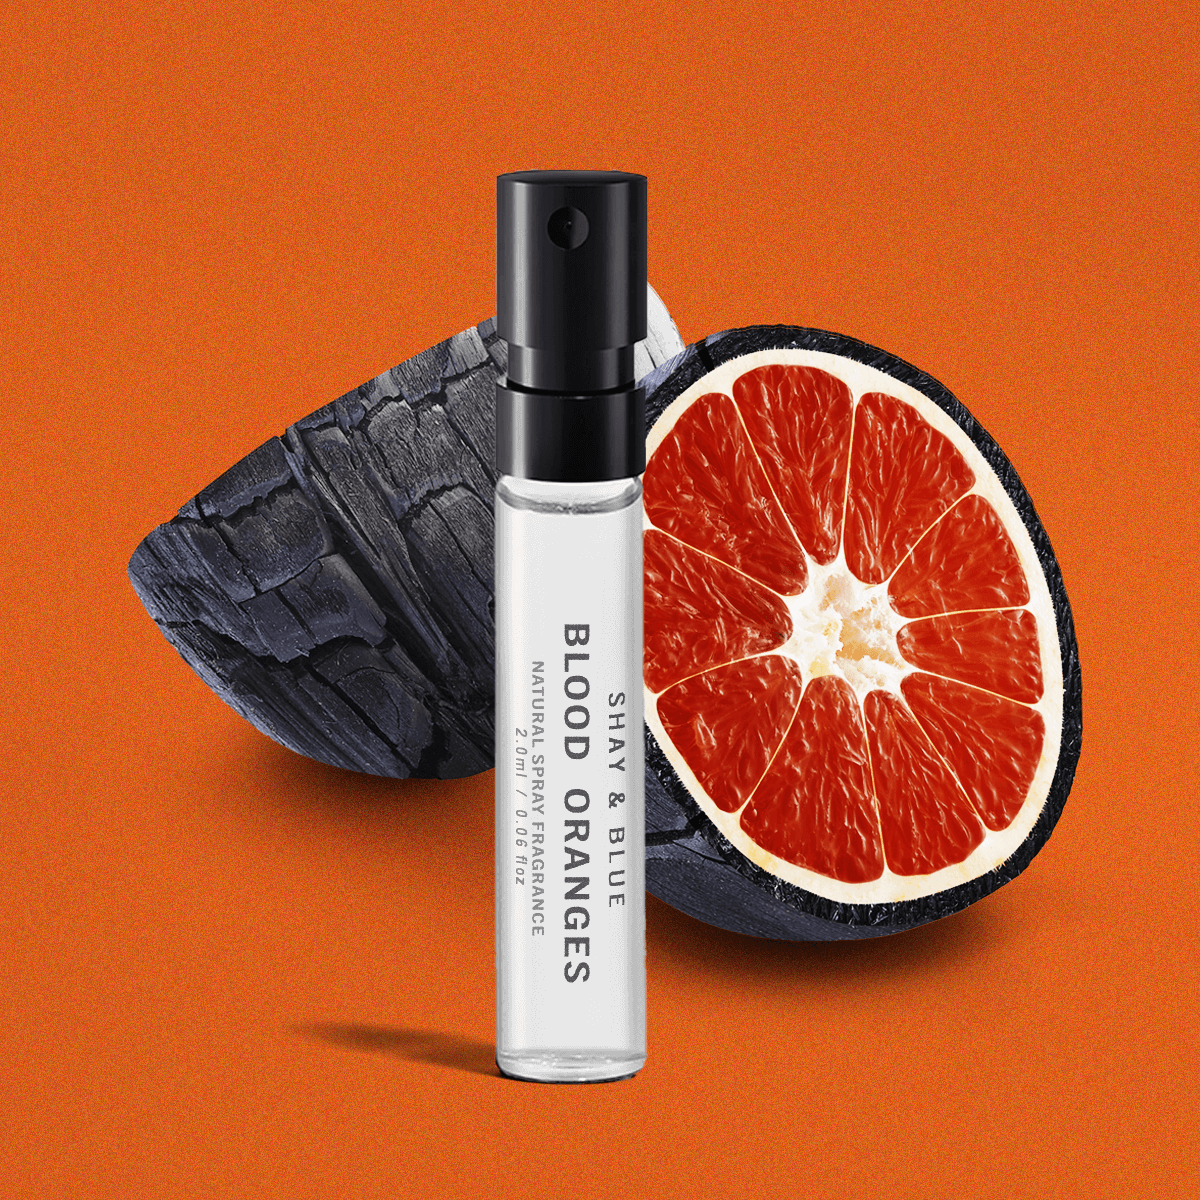 Fragranza Blood Oranges 2ml | Arance sanguigne saporite con una miscela ricca e sensuale di legni e cuoio affumicato. | Fragranza pulita per tutti i sessi | Shay & Blue